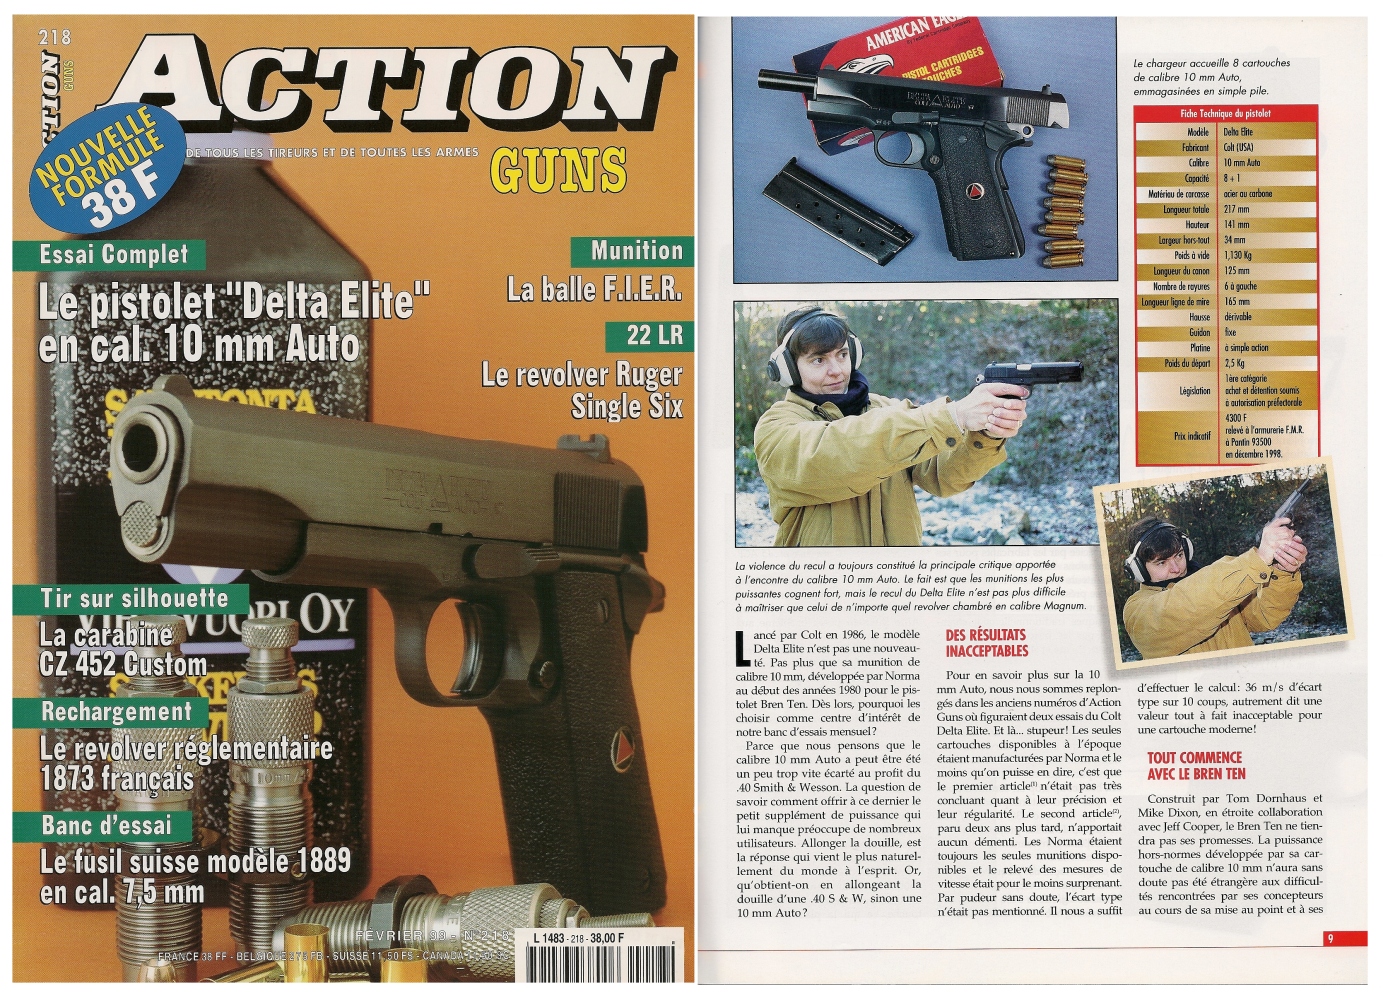 Le banc d’essai du pistolet Colt modèle Delta Elite a été publié sur 7 pages dans le magazine Action Guns n°218 (février 1999) 